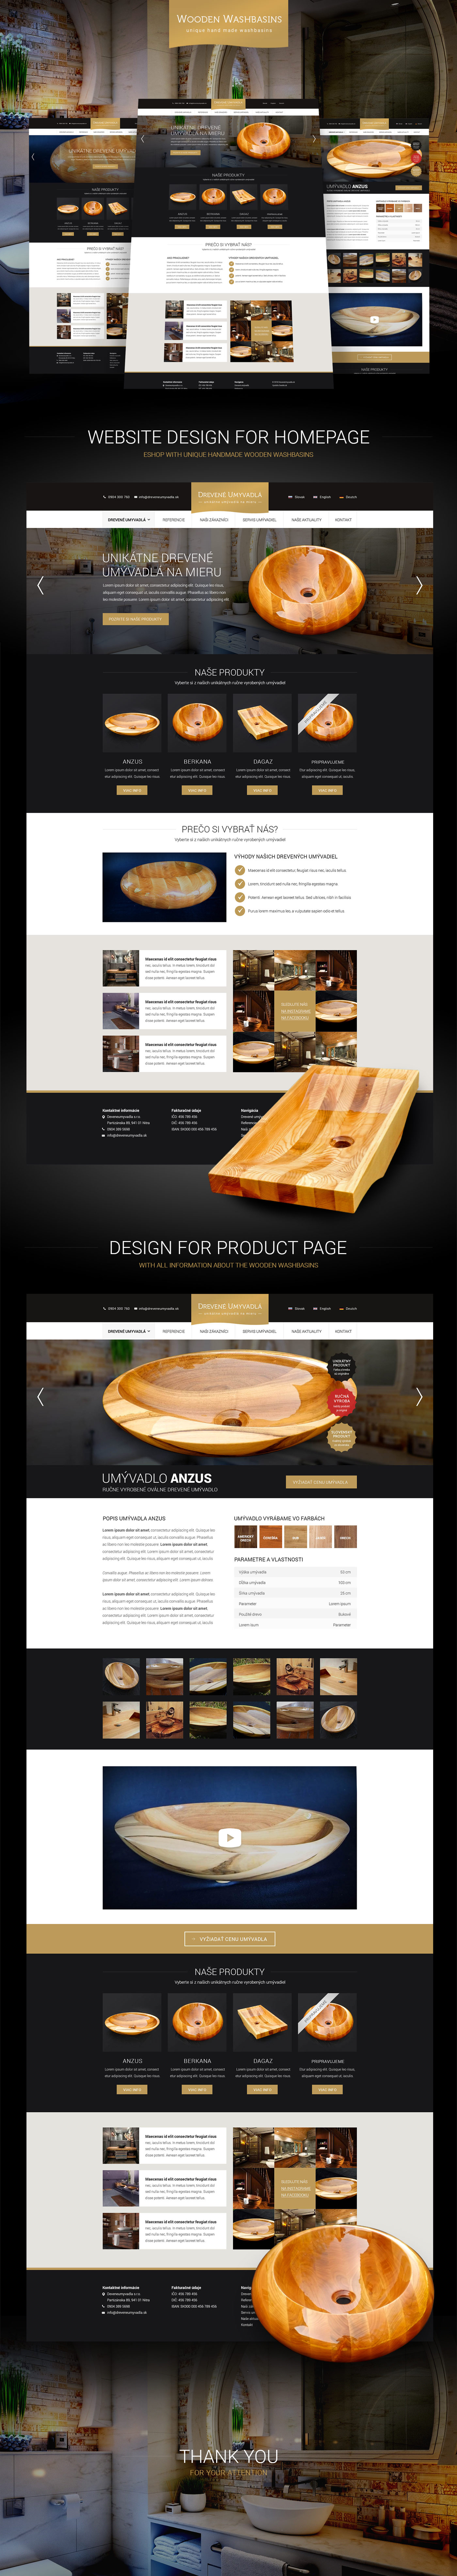 Moderný a štýlový webdizajn eshopu s ručne vyrobenými drevenými umývadlami.